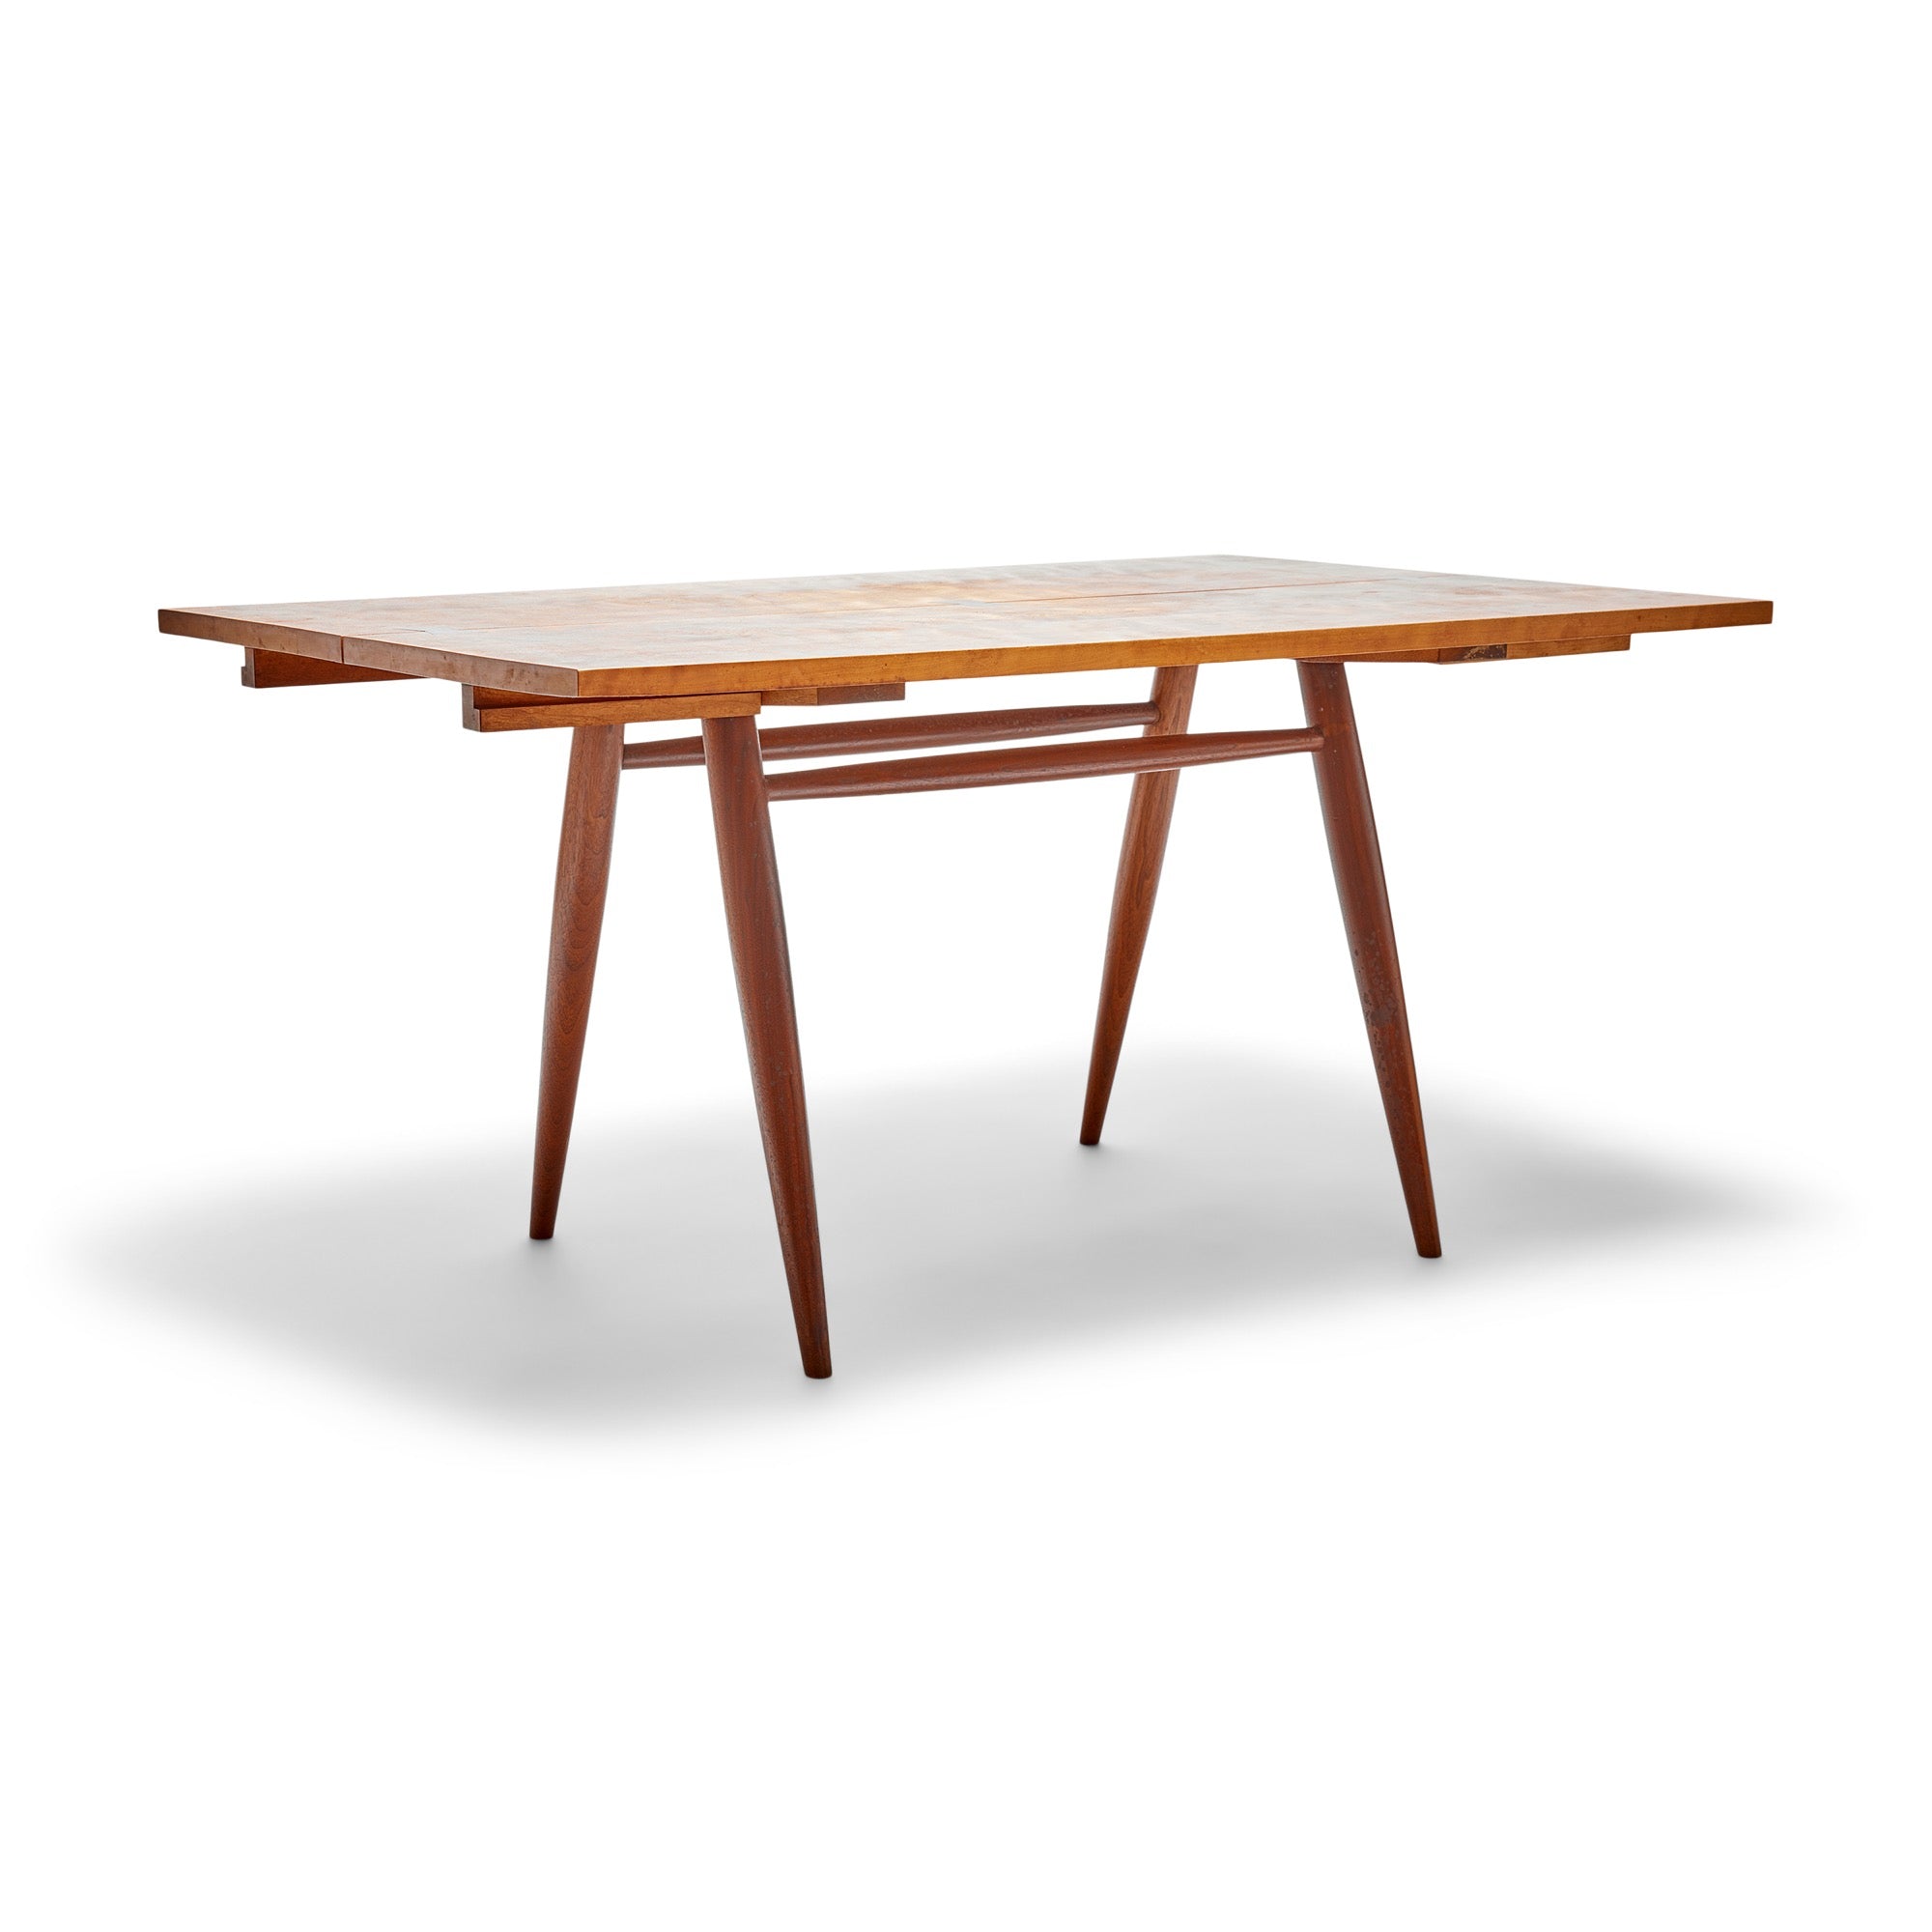 Table by George Nakashima for George Nakashima Studio